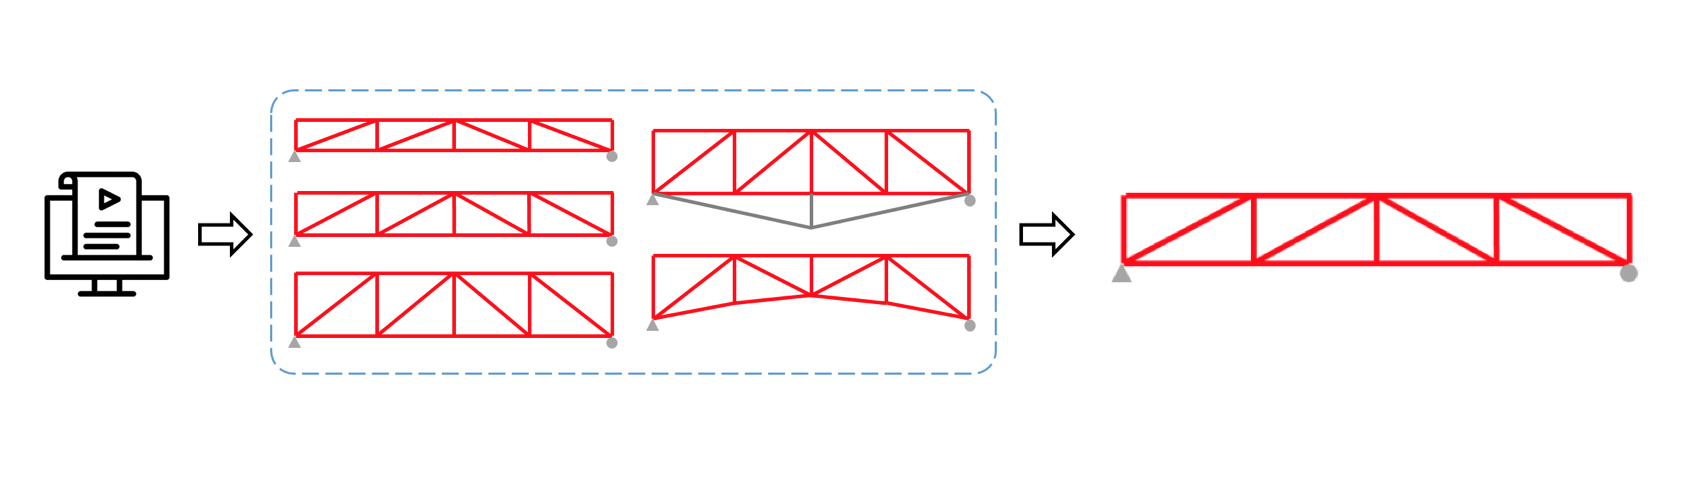 Der Ingenieur kann ein Skript für die automatische Generierung vieler Brückenmodelle mit den angegebenen Unterschieden zwischen ihnen erstellen und eine Analyse mit anschließender automatischer Nachbearbeitung der Ergebnisse und der Bauteilkonstruktion durchführen